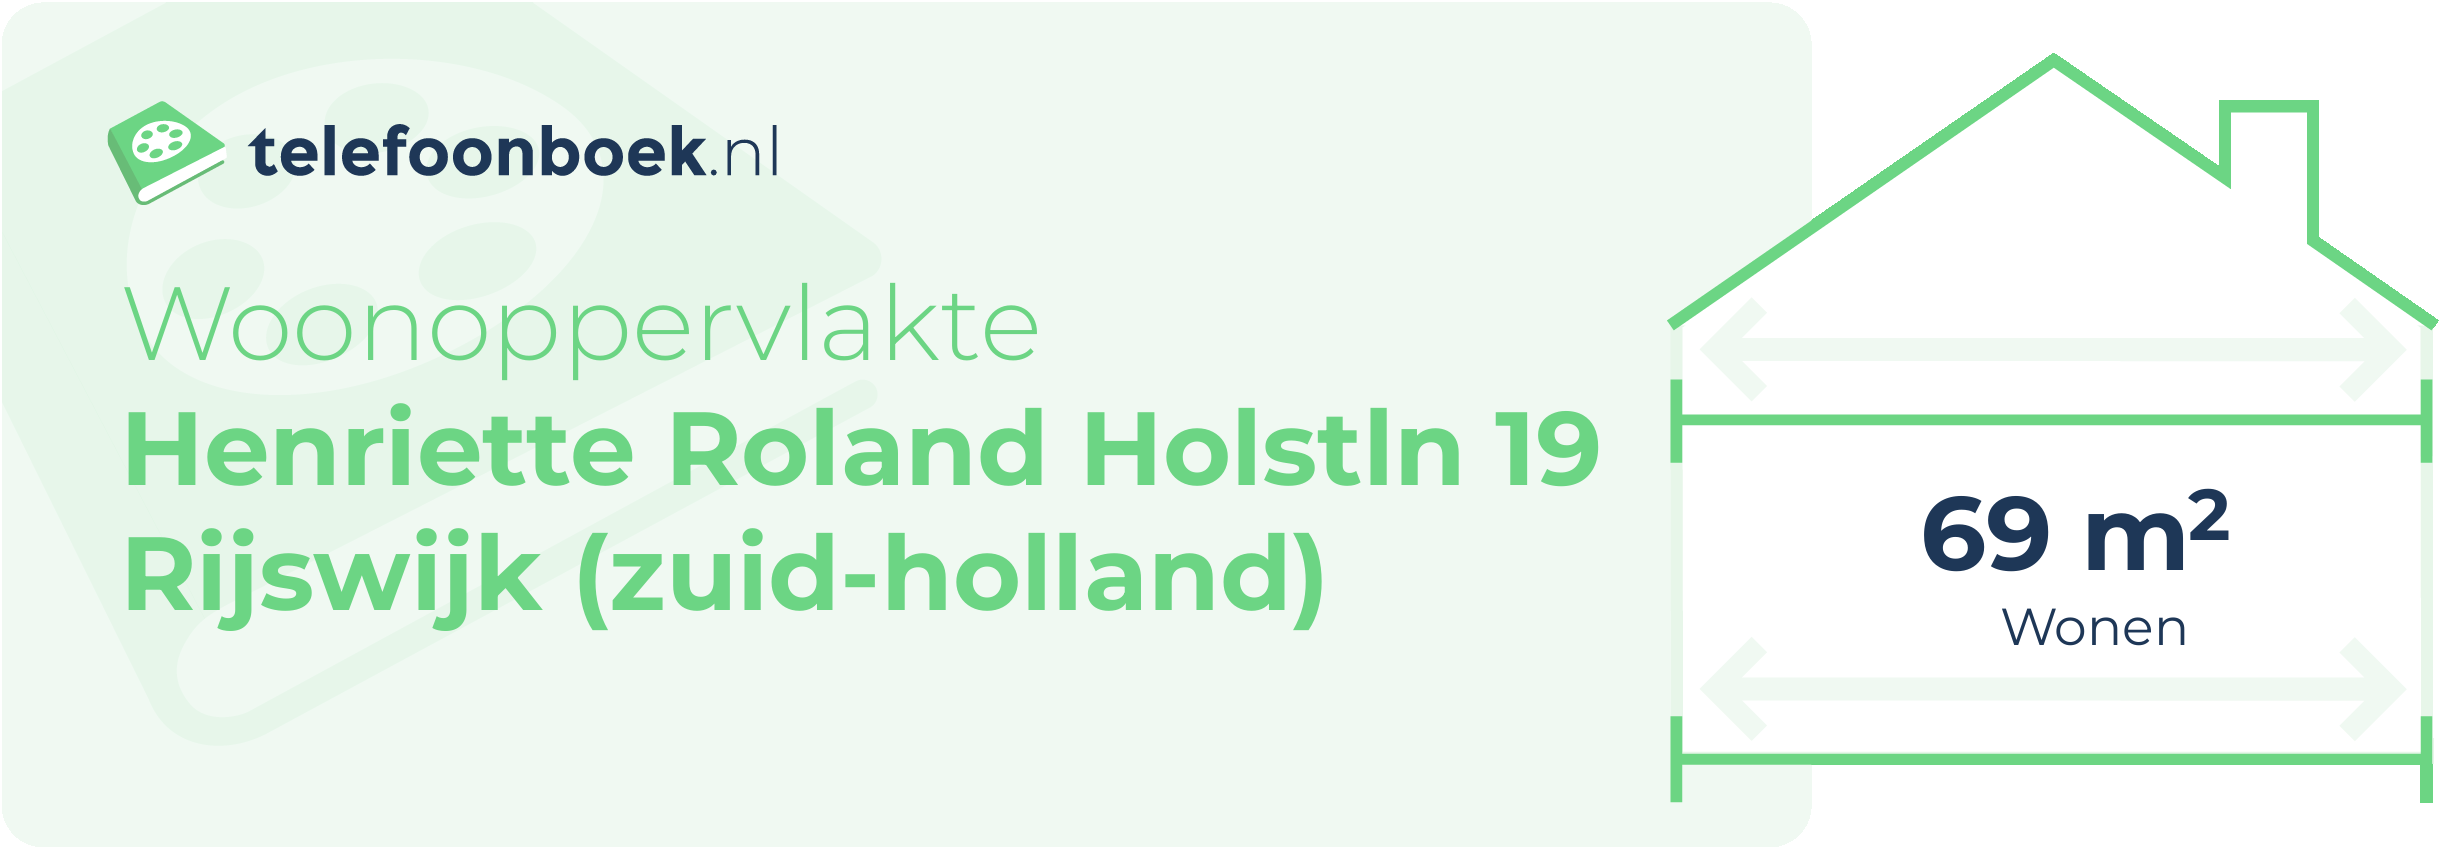 Woonoppervlakte Henriette Roland Holstln 19 Rijswijk (Zuid-Holland)